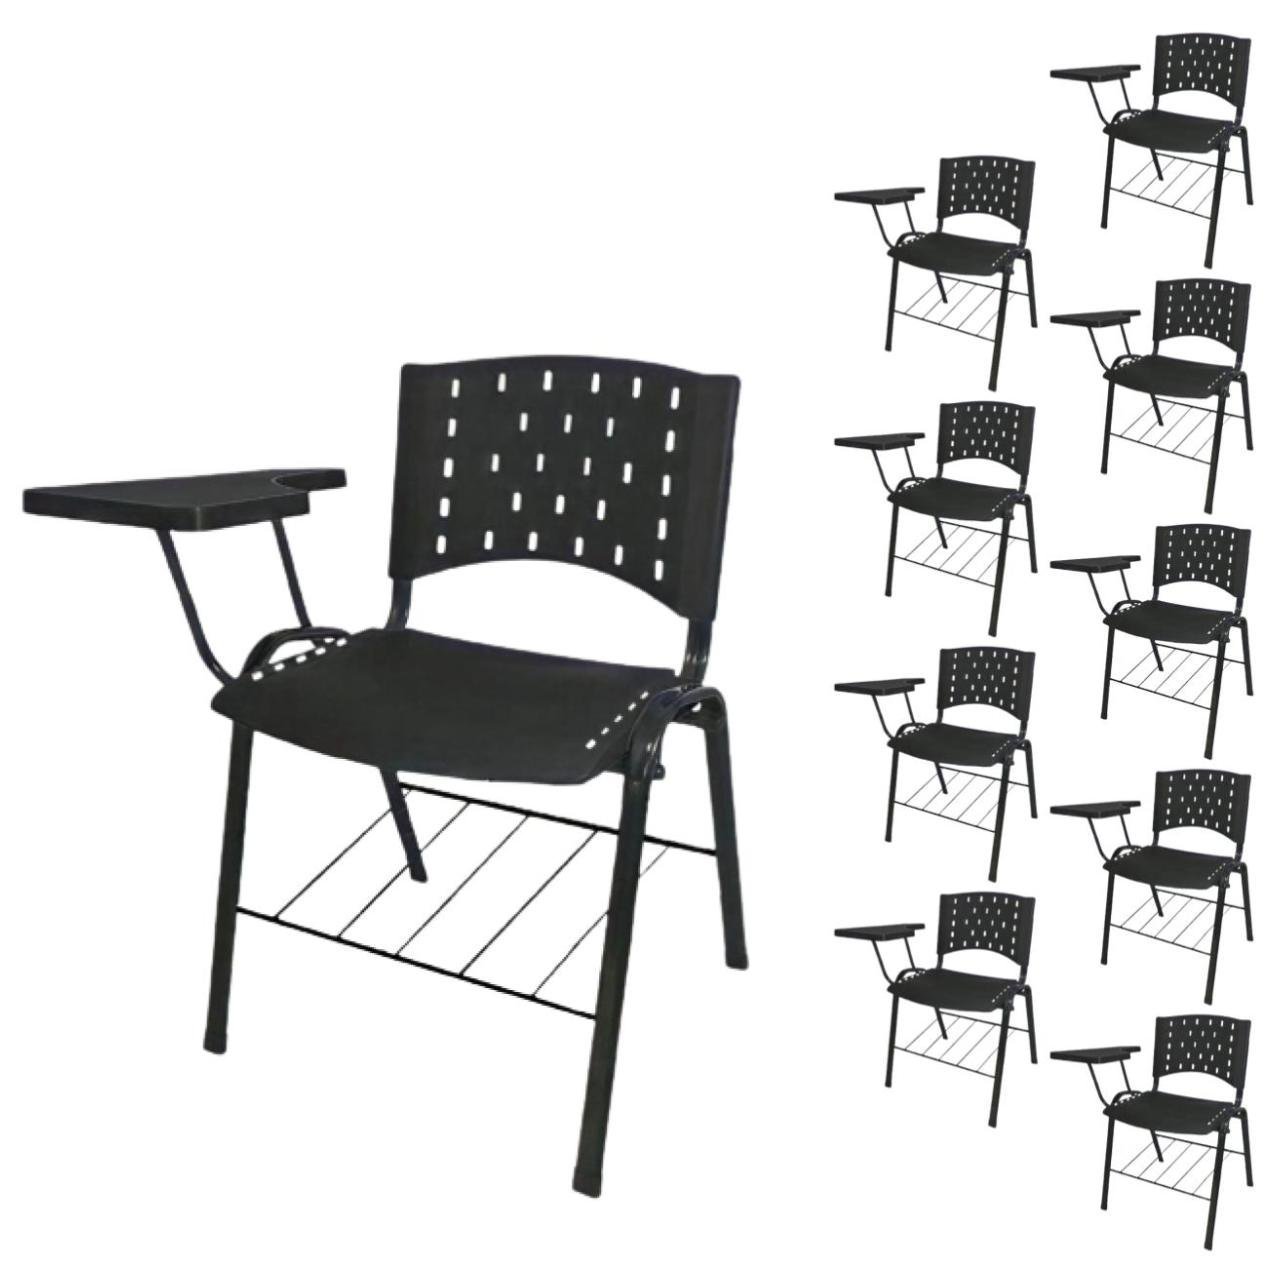 KIT 10 Cadeiras Universitárias com Prancheta e Porta Livros - Cor Preto - REAPLAST - 32042